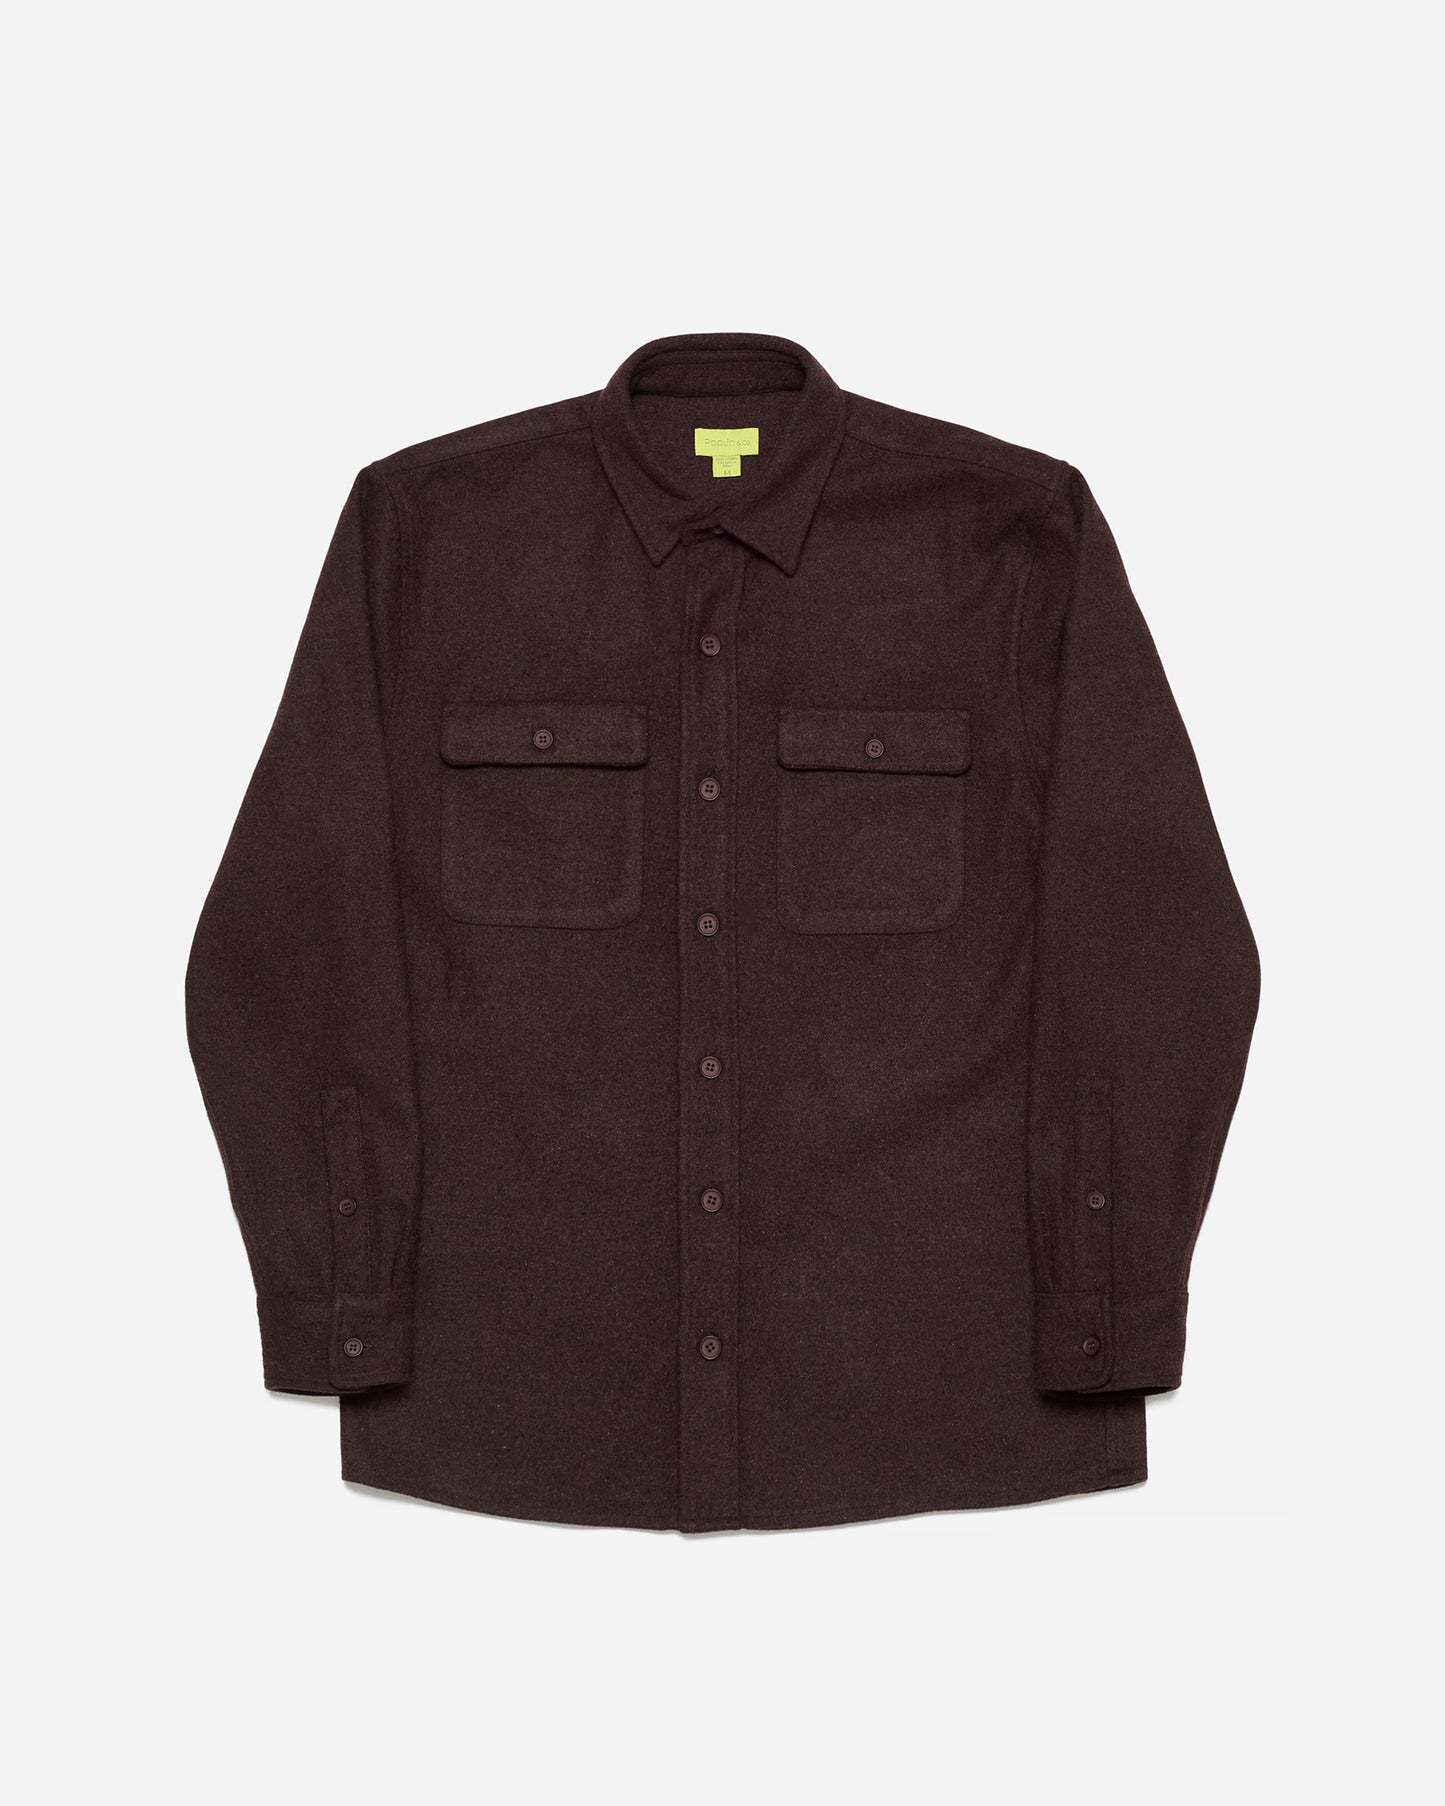 Speckeld Brown Shirt Jacket